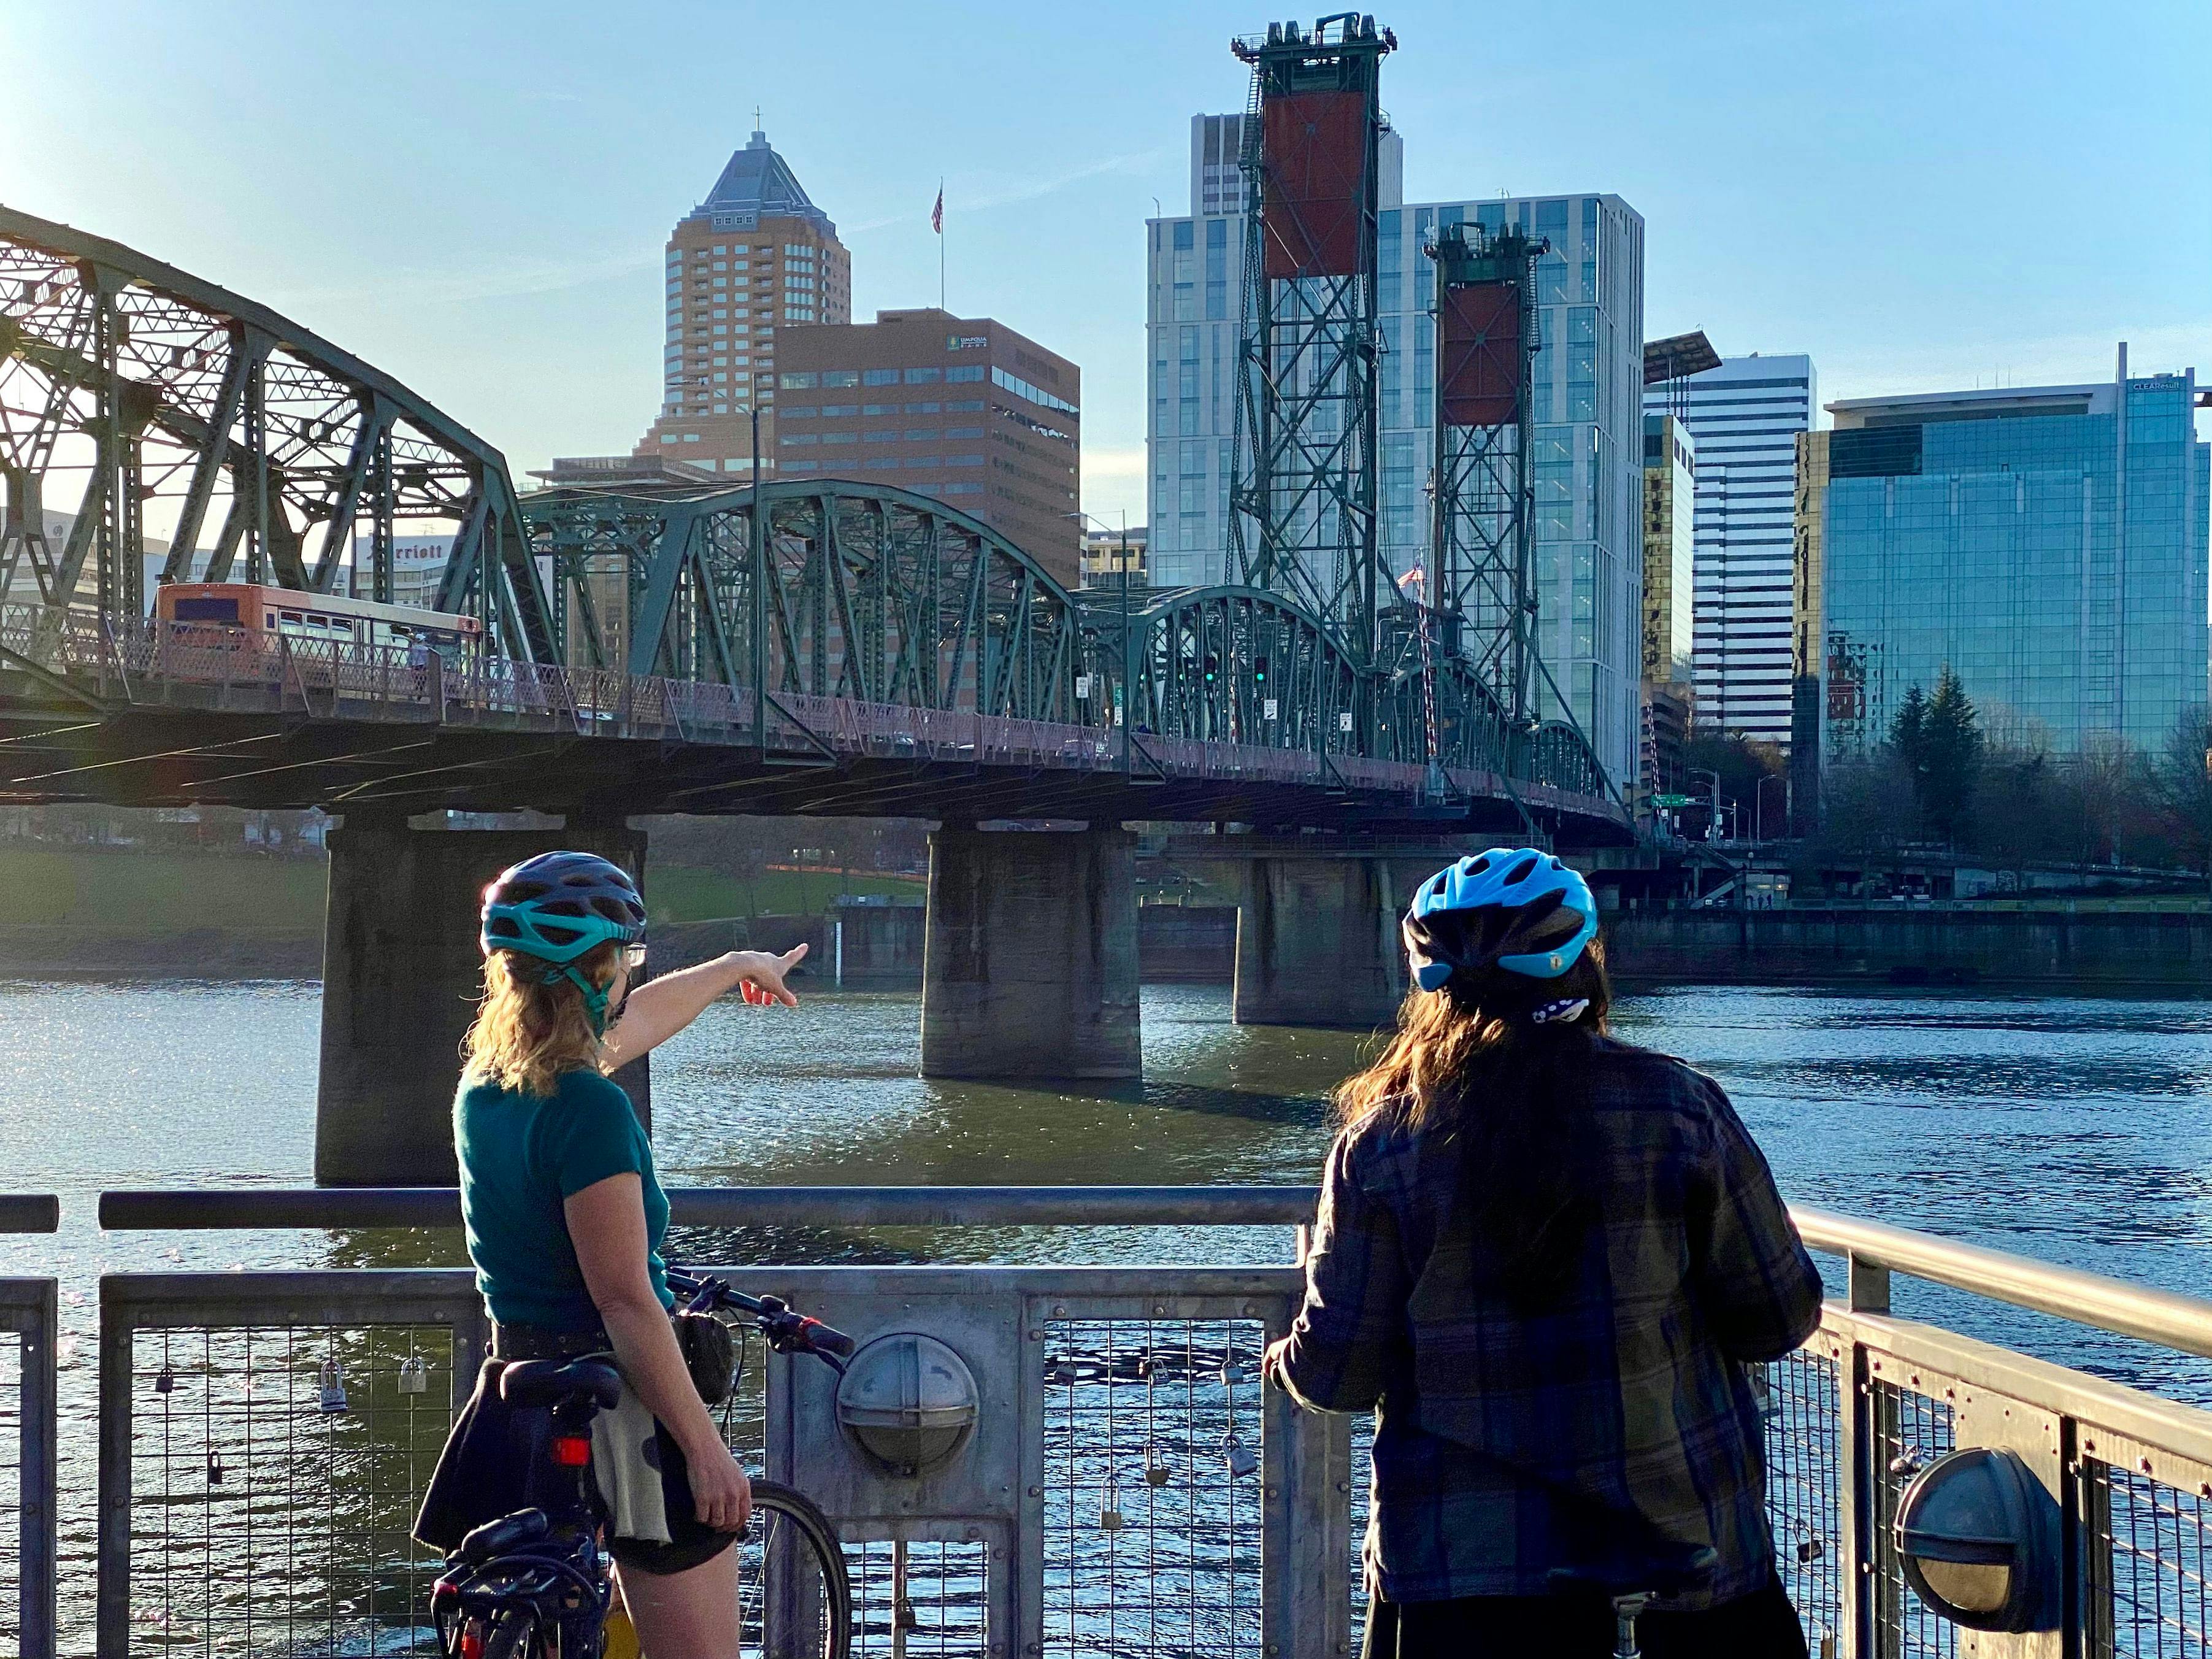 Portland parks and bridges 3 hour bike tour Musement